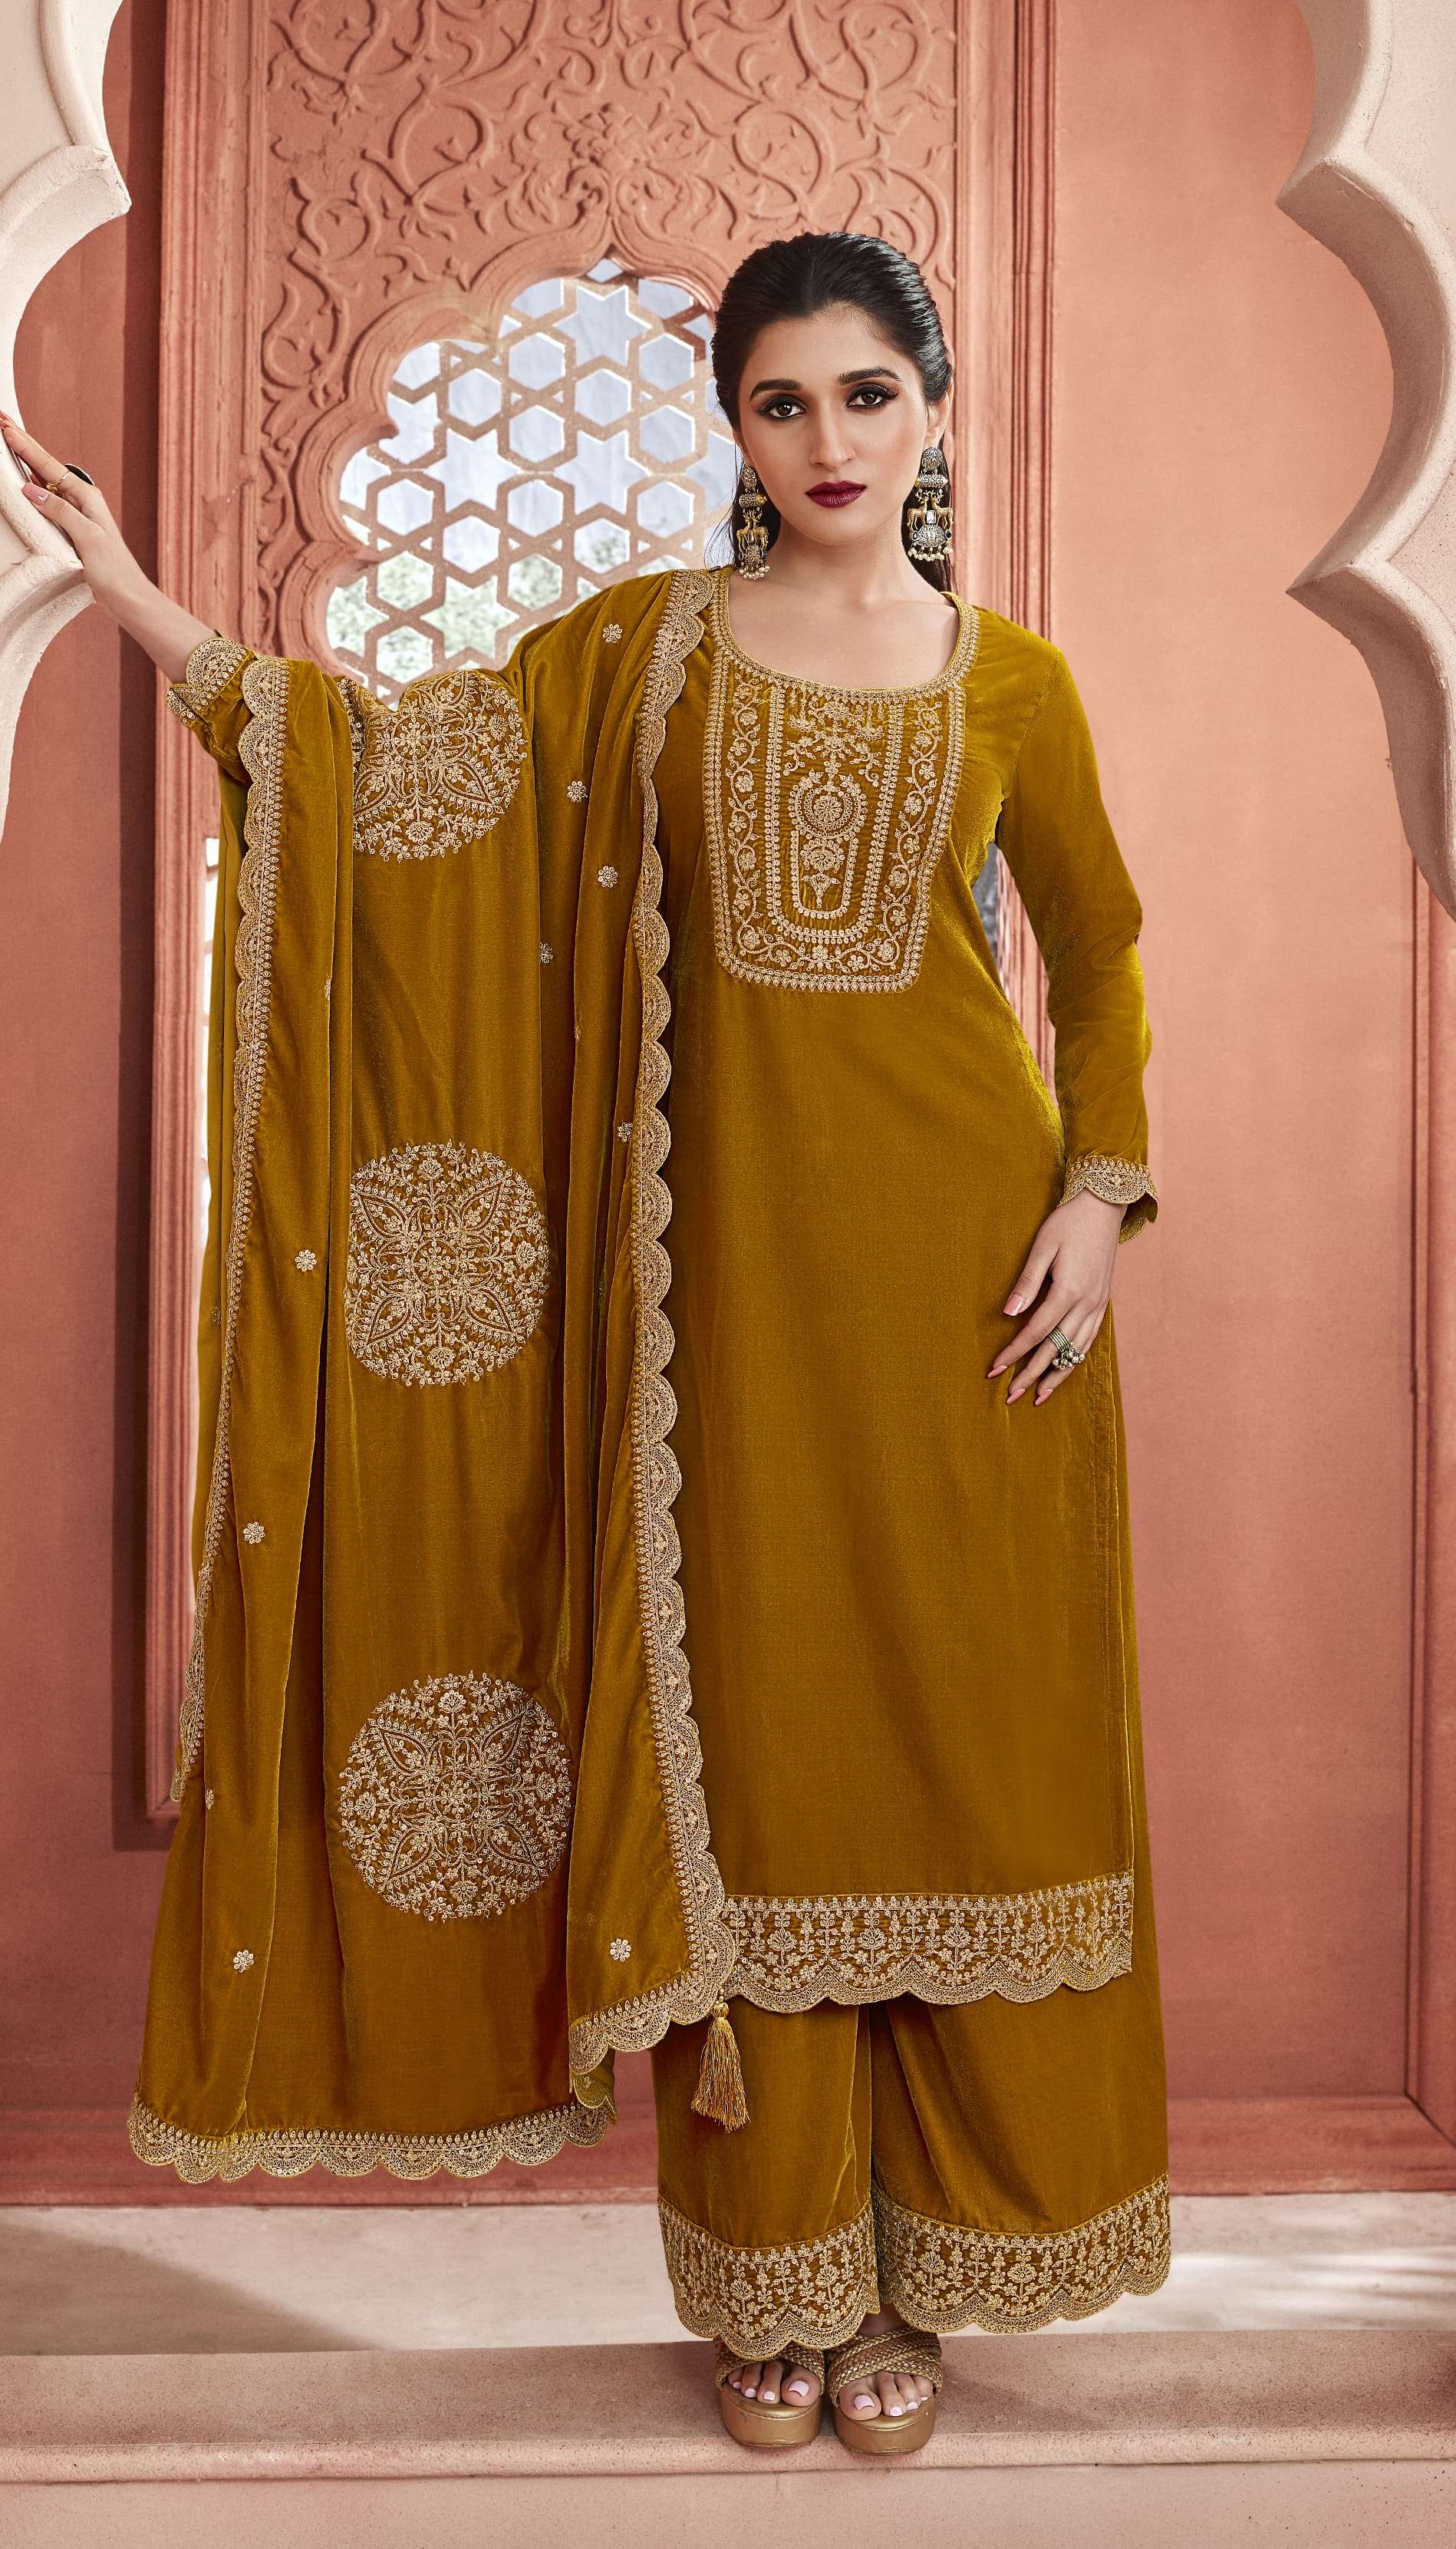 vinay fashion kervin velvet embroidred vol 3 66121-66126 series designer unstich salwar kameez catalogue online best rate 